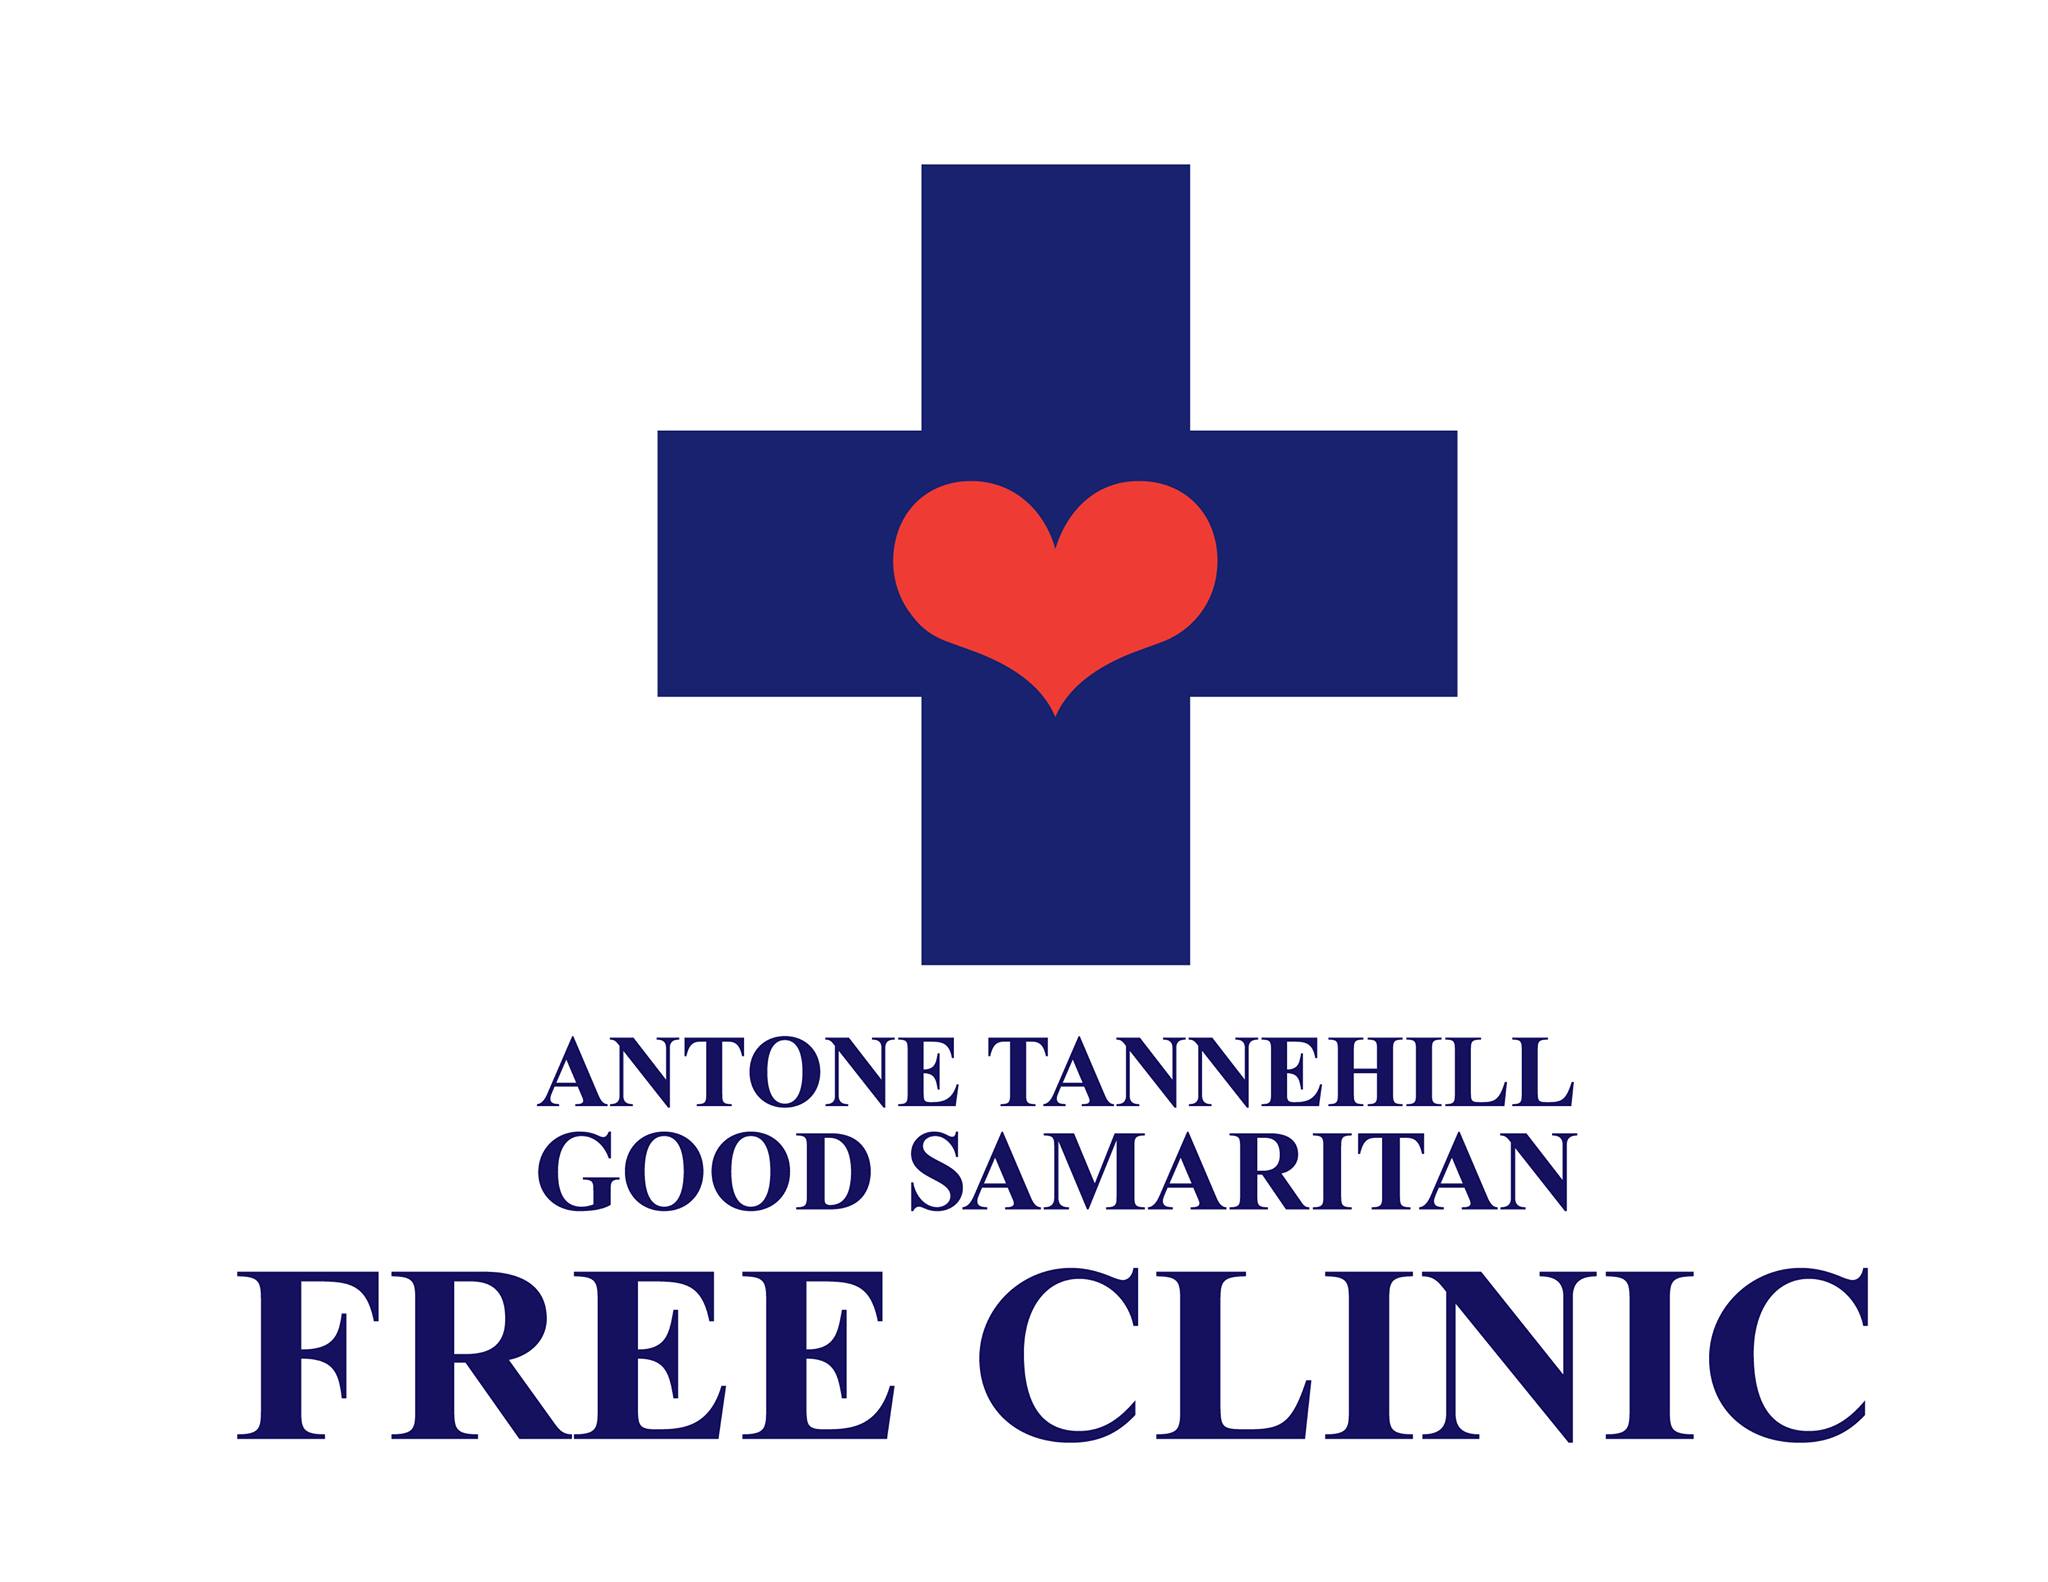 Antone Tannehill Good Samaritan Free Clinic